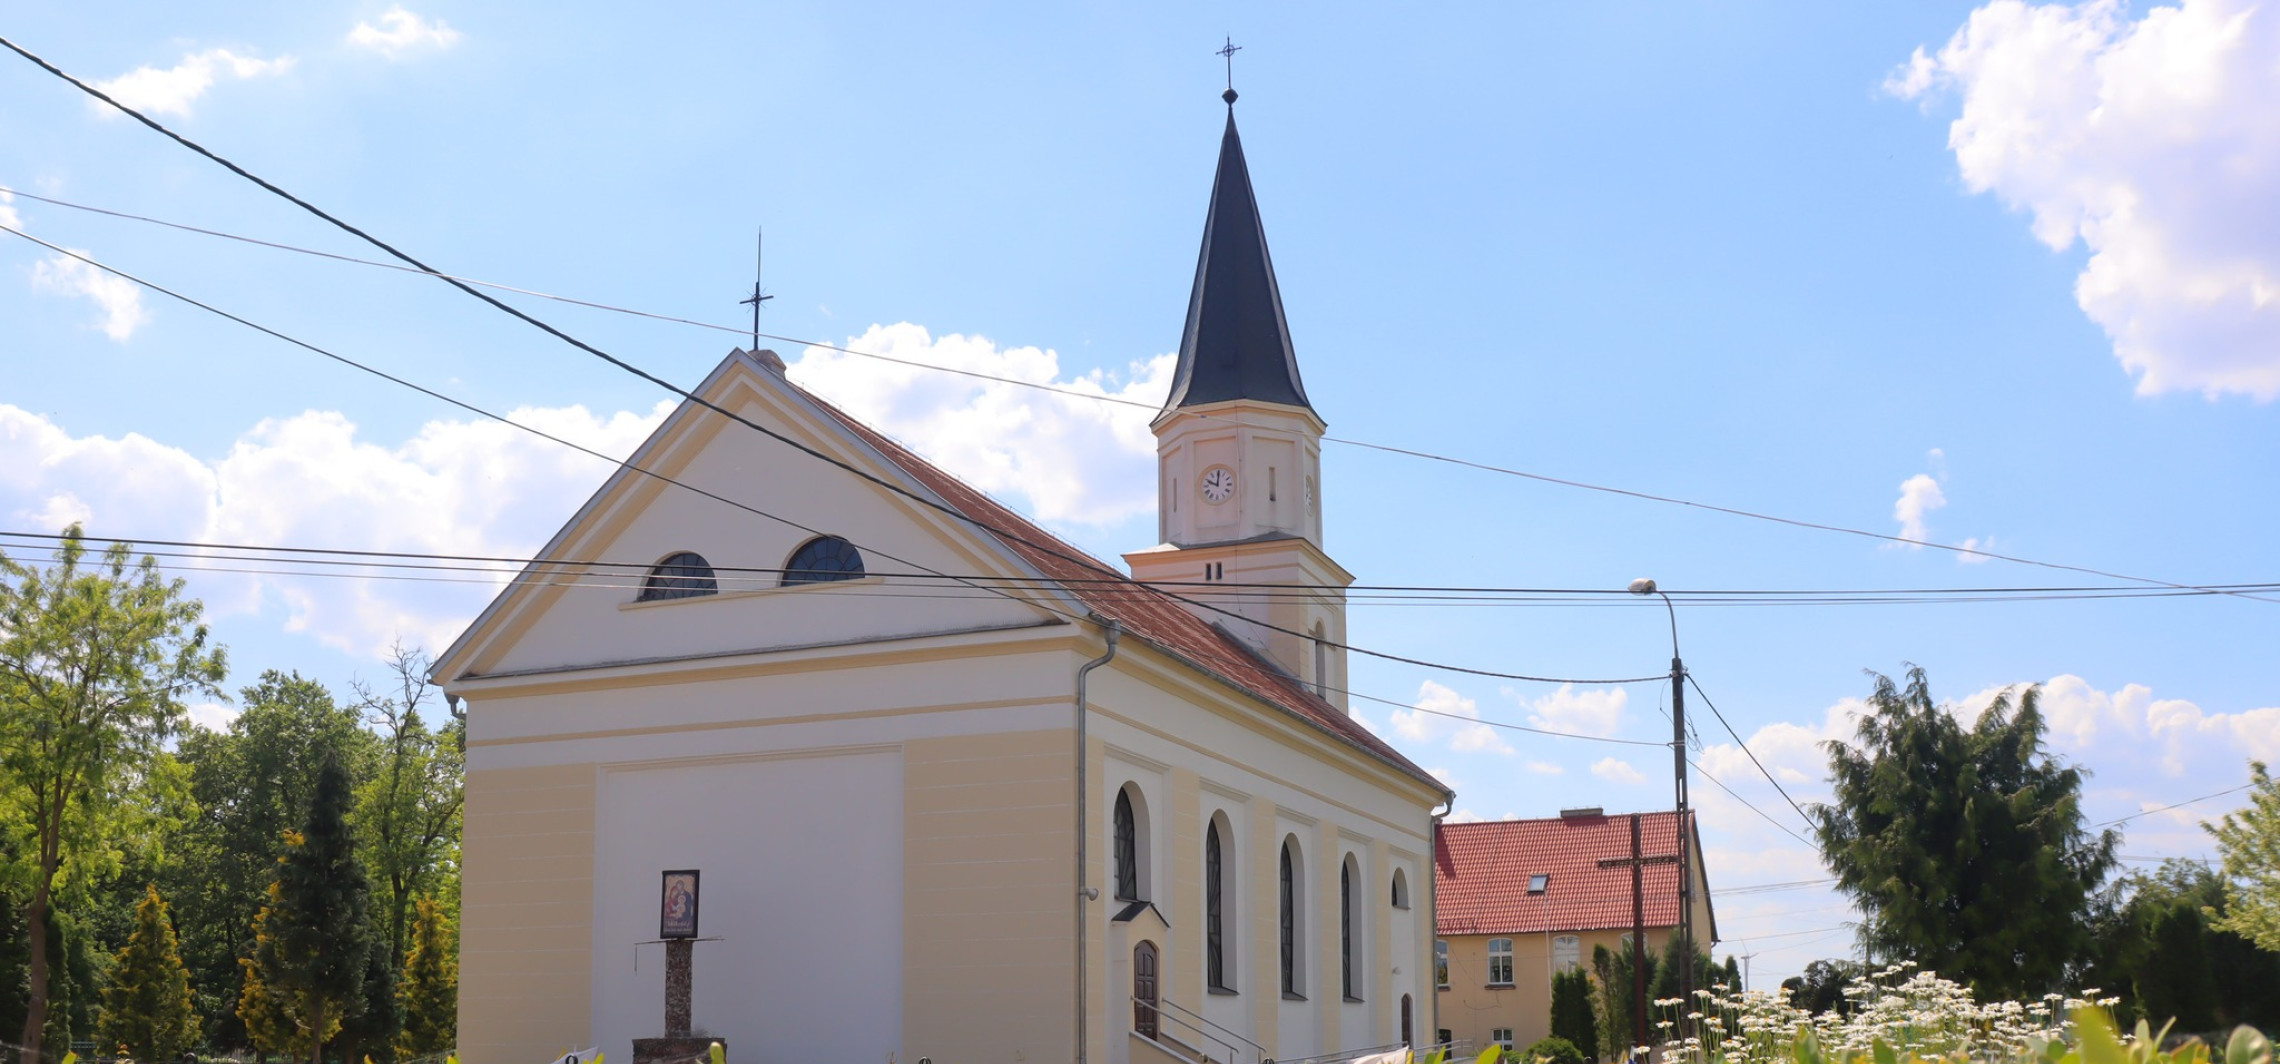 Inowrocław - Starostwo ma fundusze na renowację zabytków